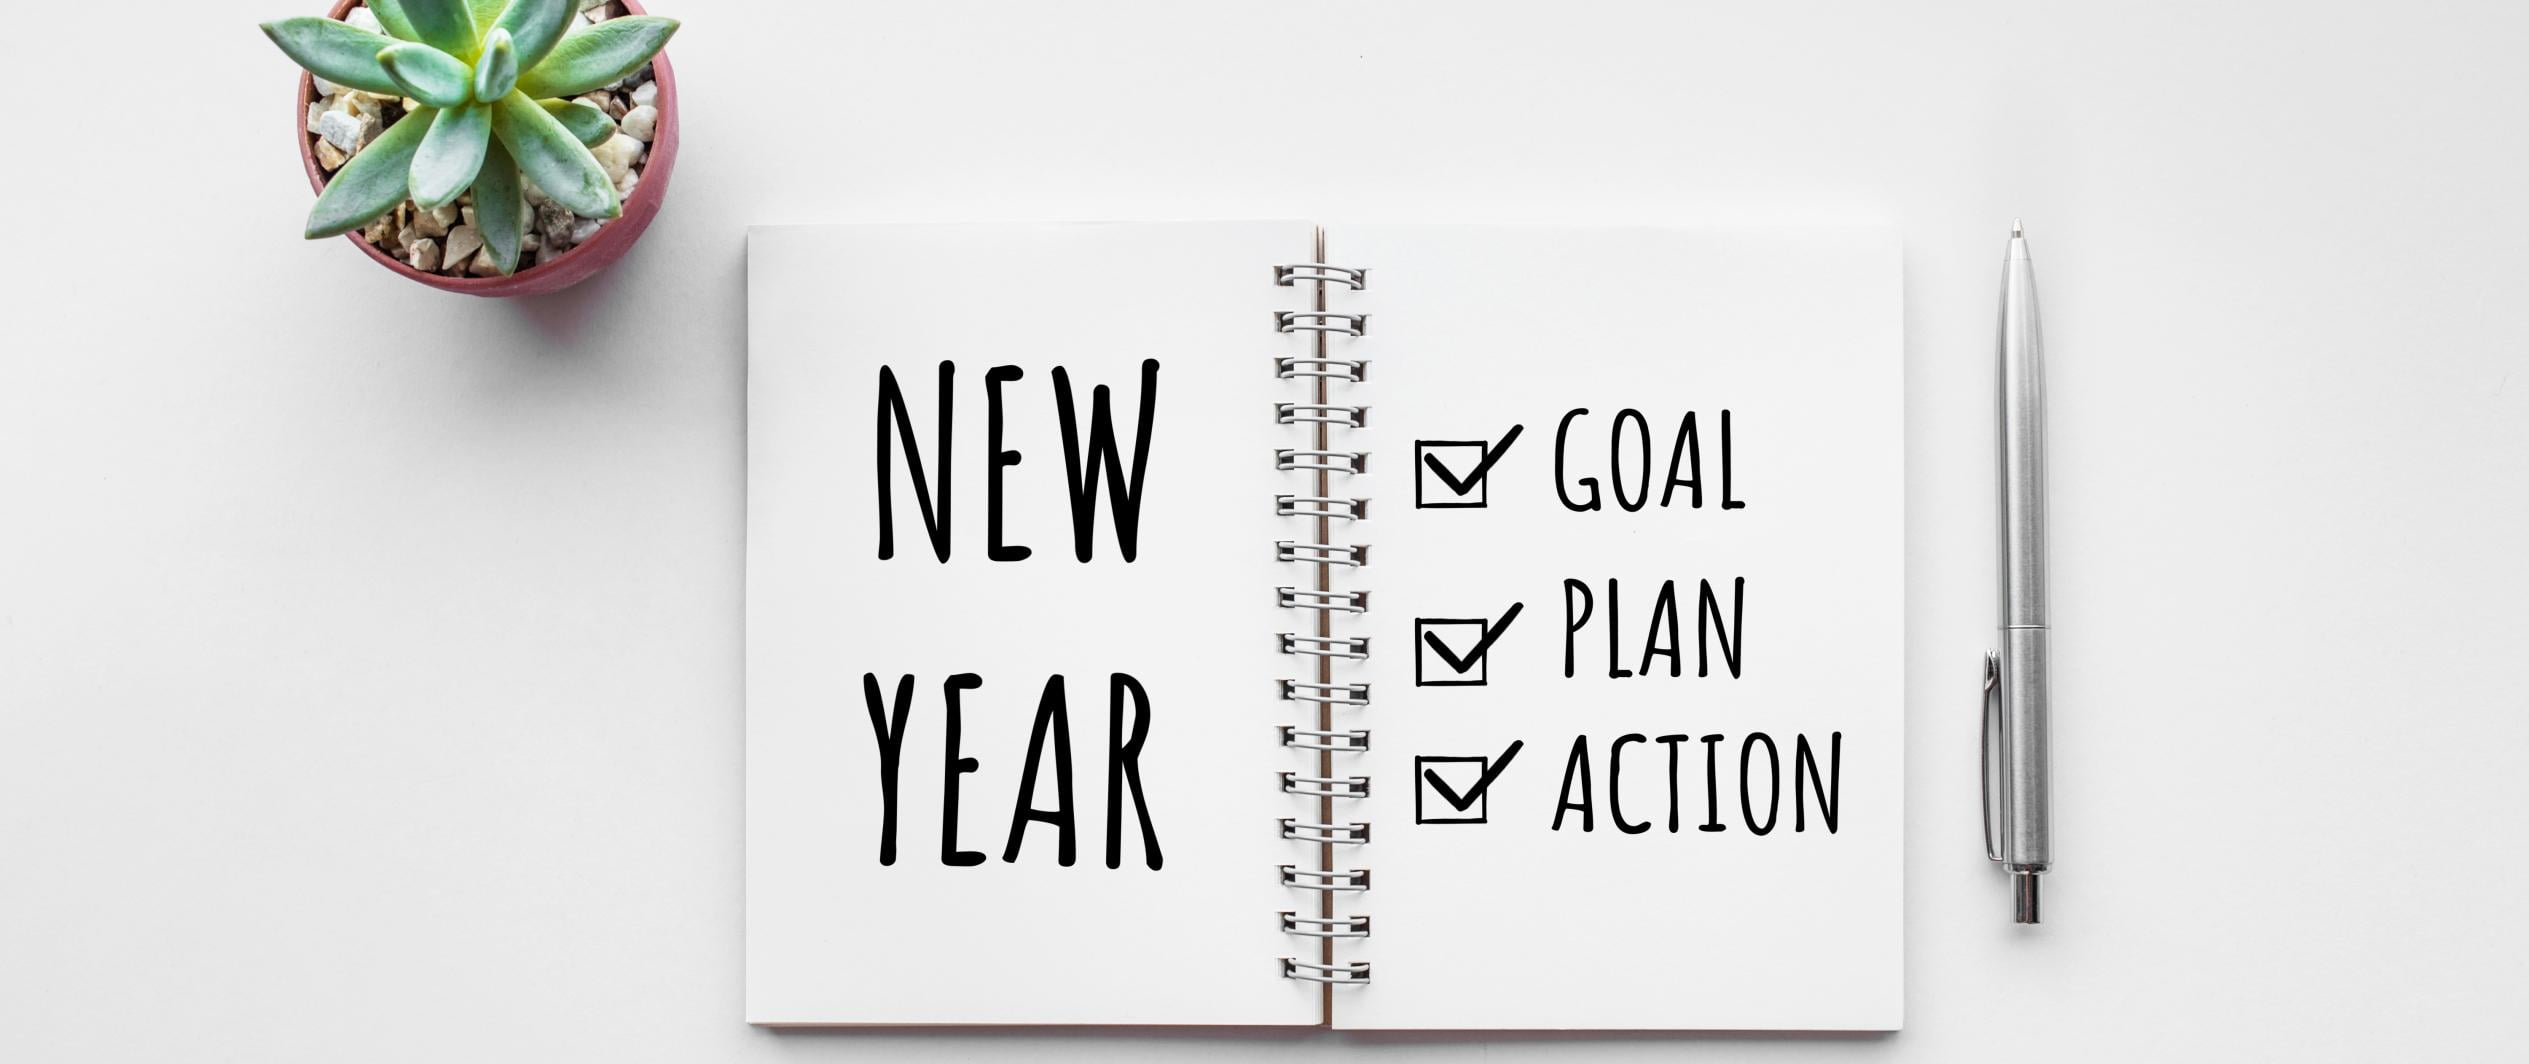 اهداف سال جدید